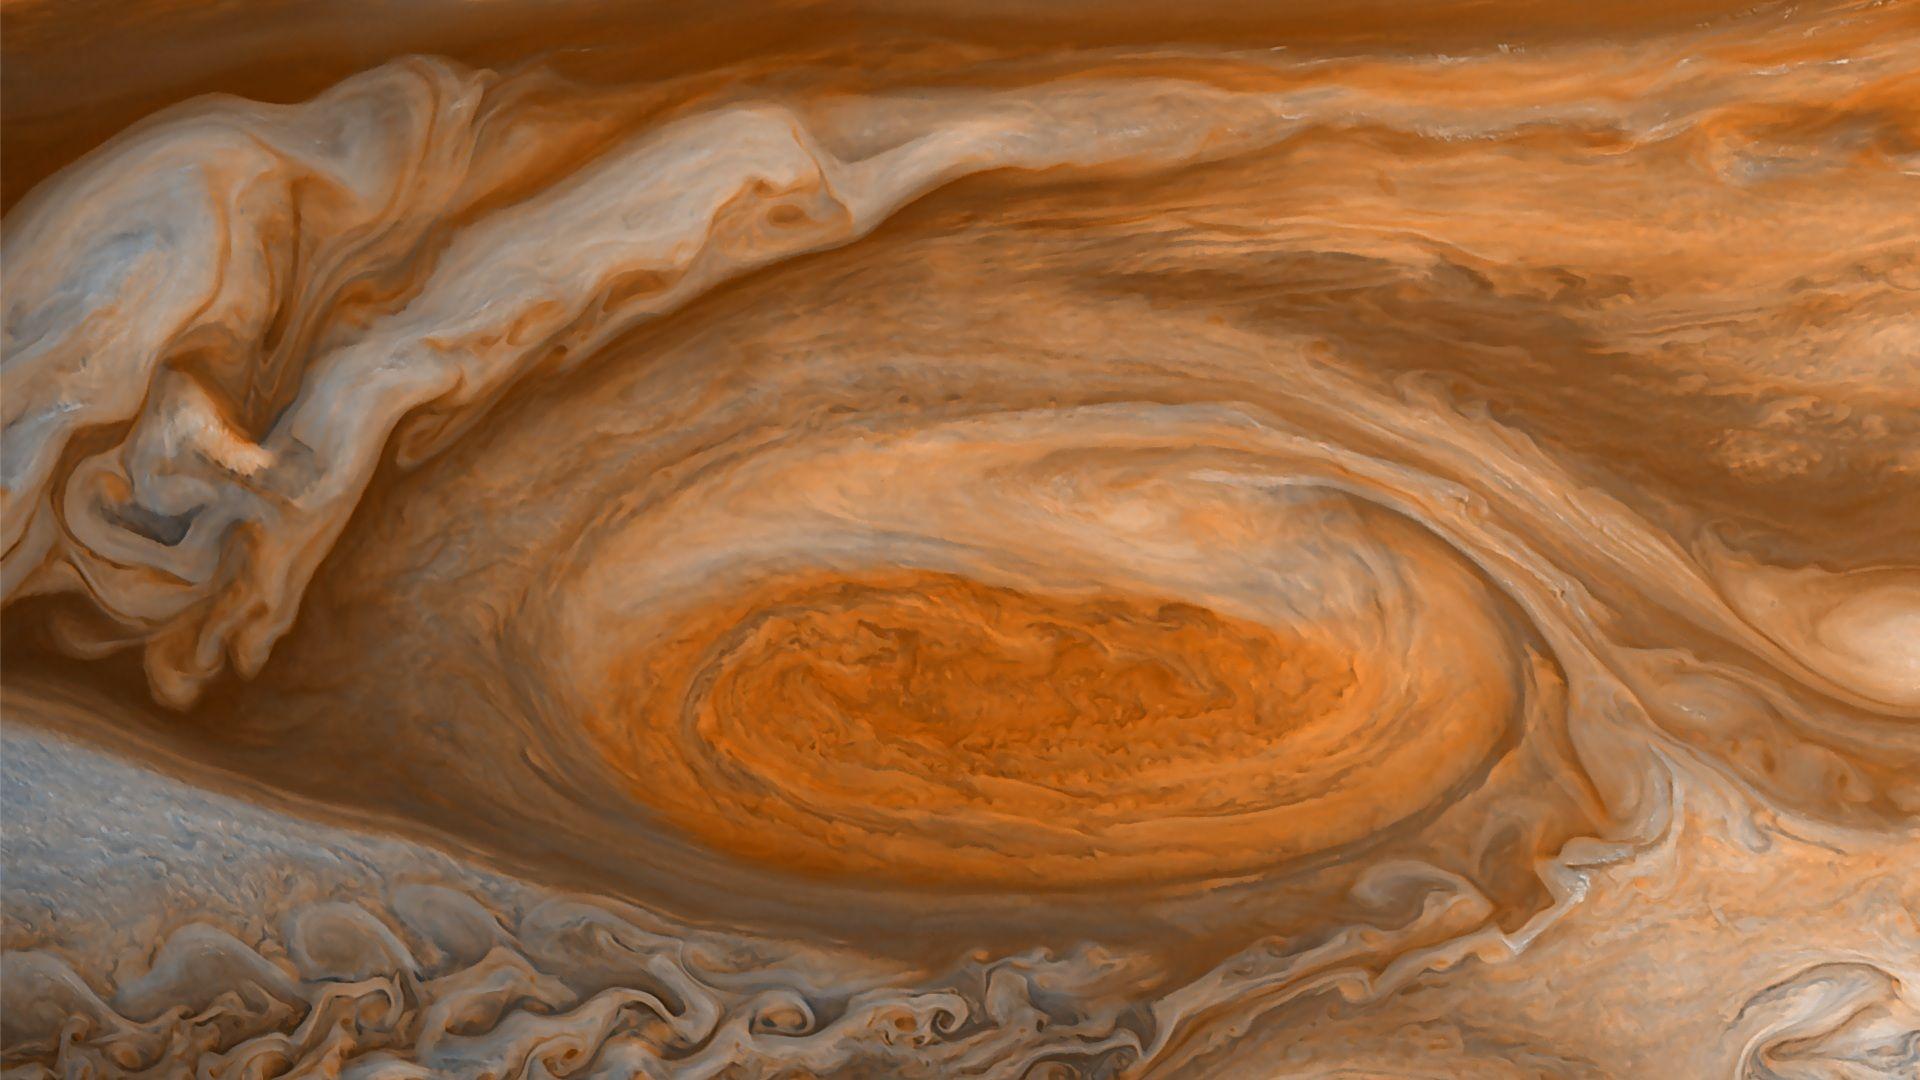  Jupiter  4K  Wallpapers  Top Free Jupiter  4K  Backgrounds  